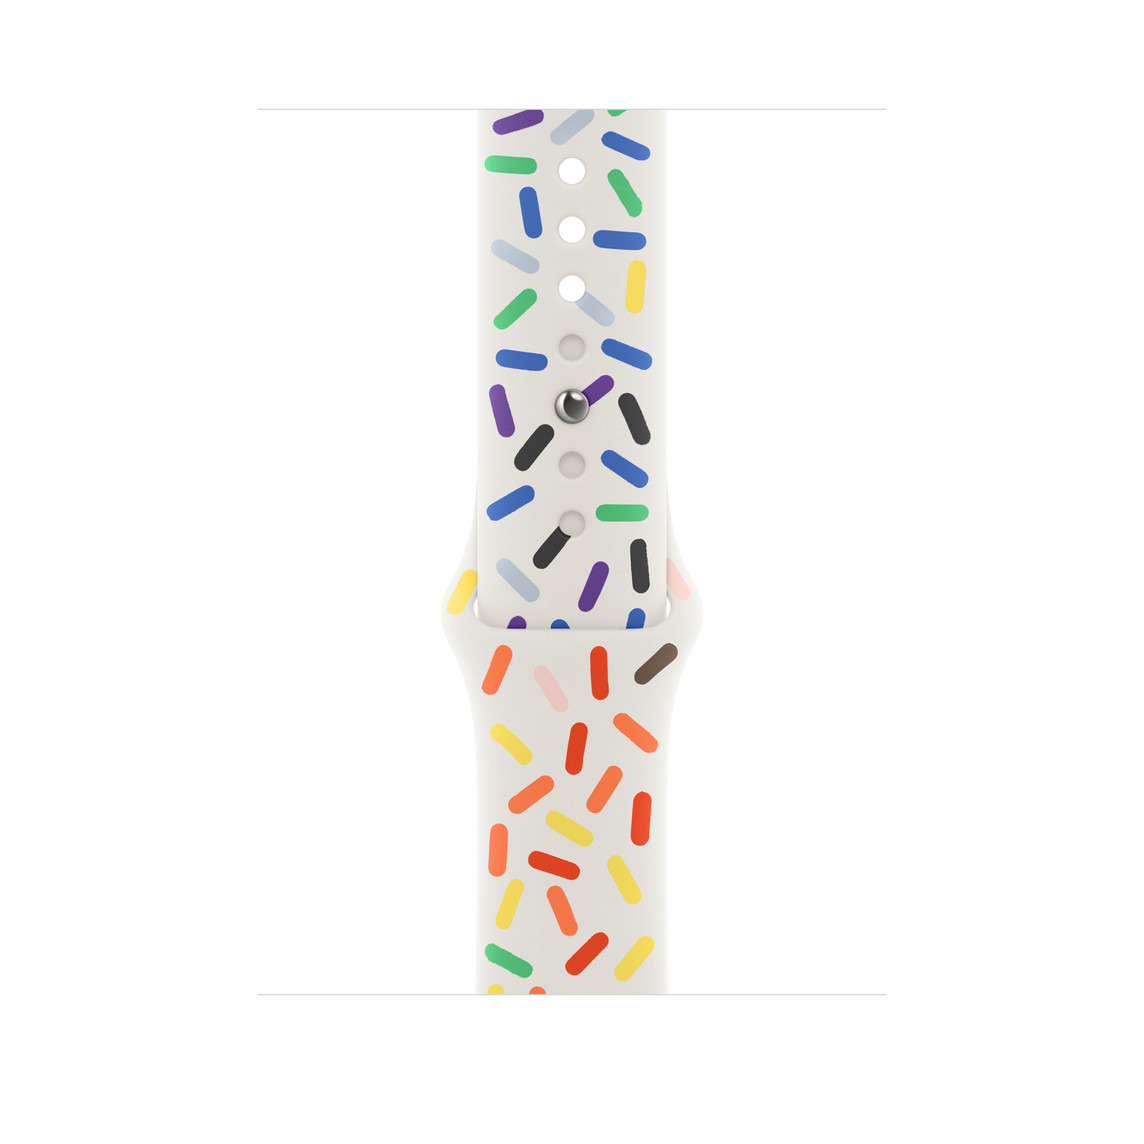 彩虹版运动型表带，白色表带上缀满了不同彩虹色的实心椭圆图案，展示顺滑的氟橡胶材质和按扣加收拢式表扣。